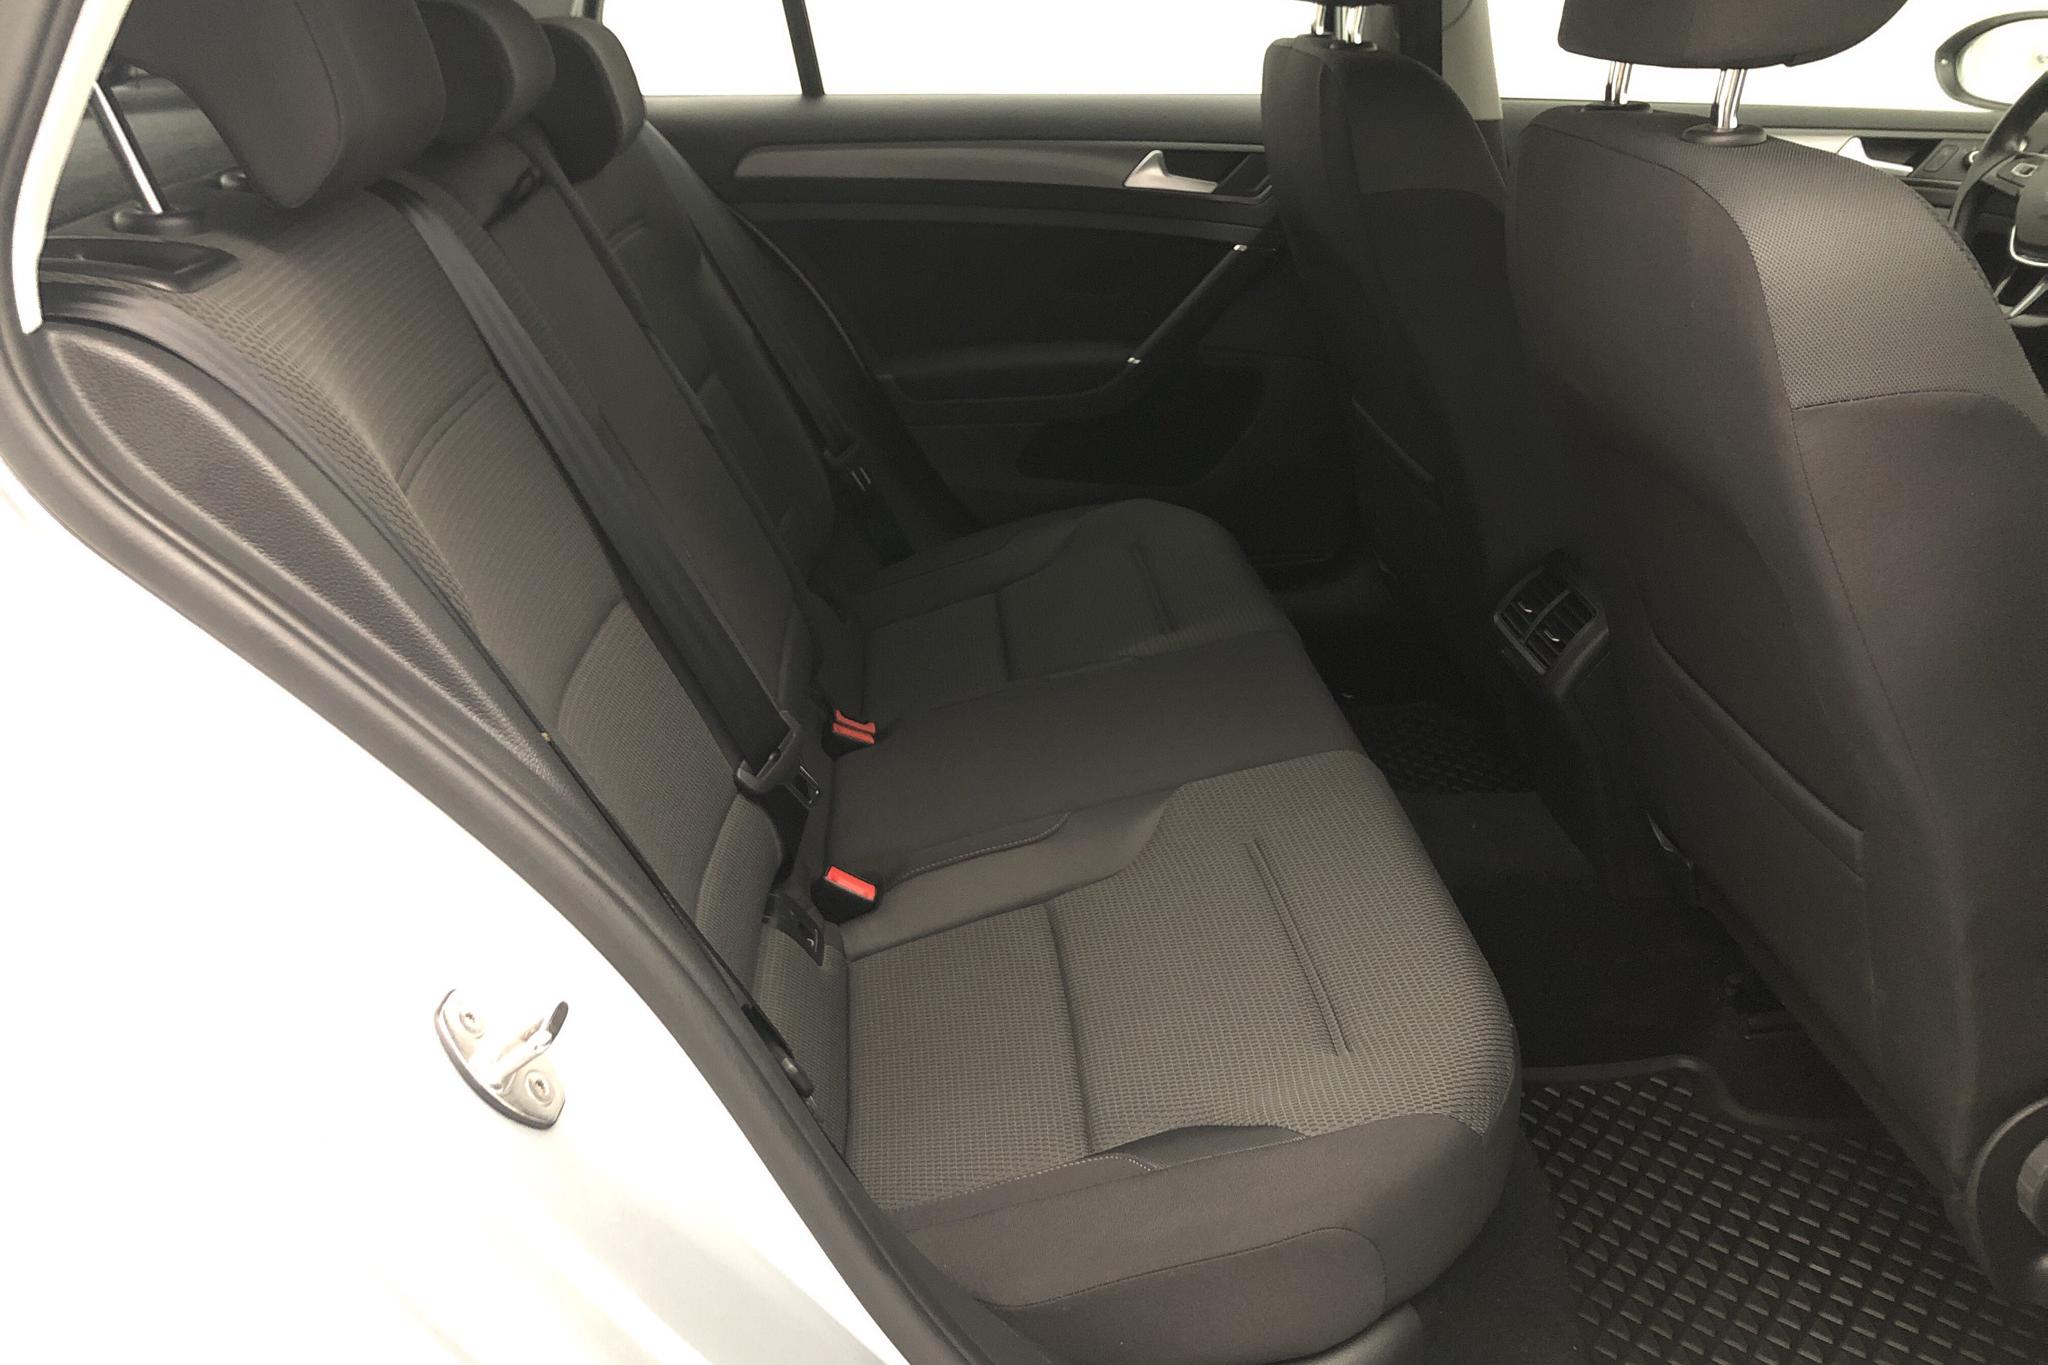 VW Golf VII 1.0 TSI 5dr (110hk) - 77 200 km - Manual - silver - 2018